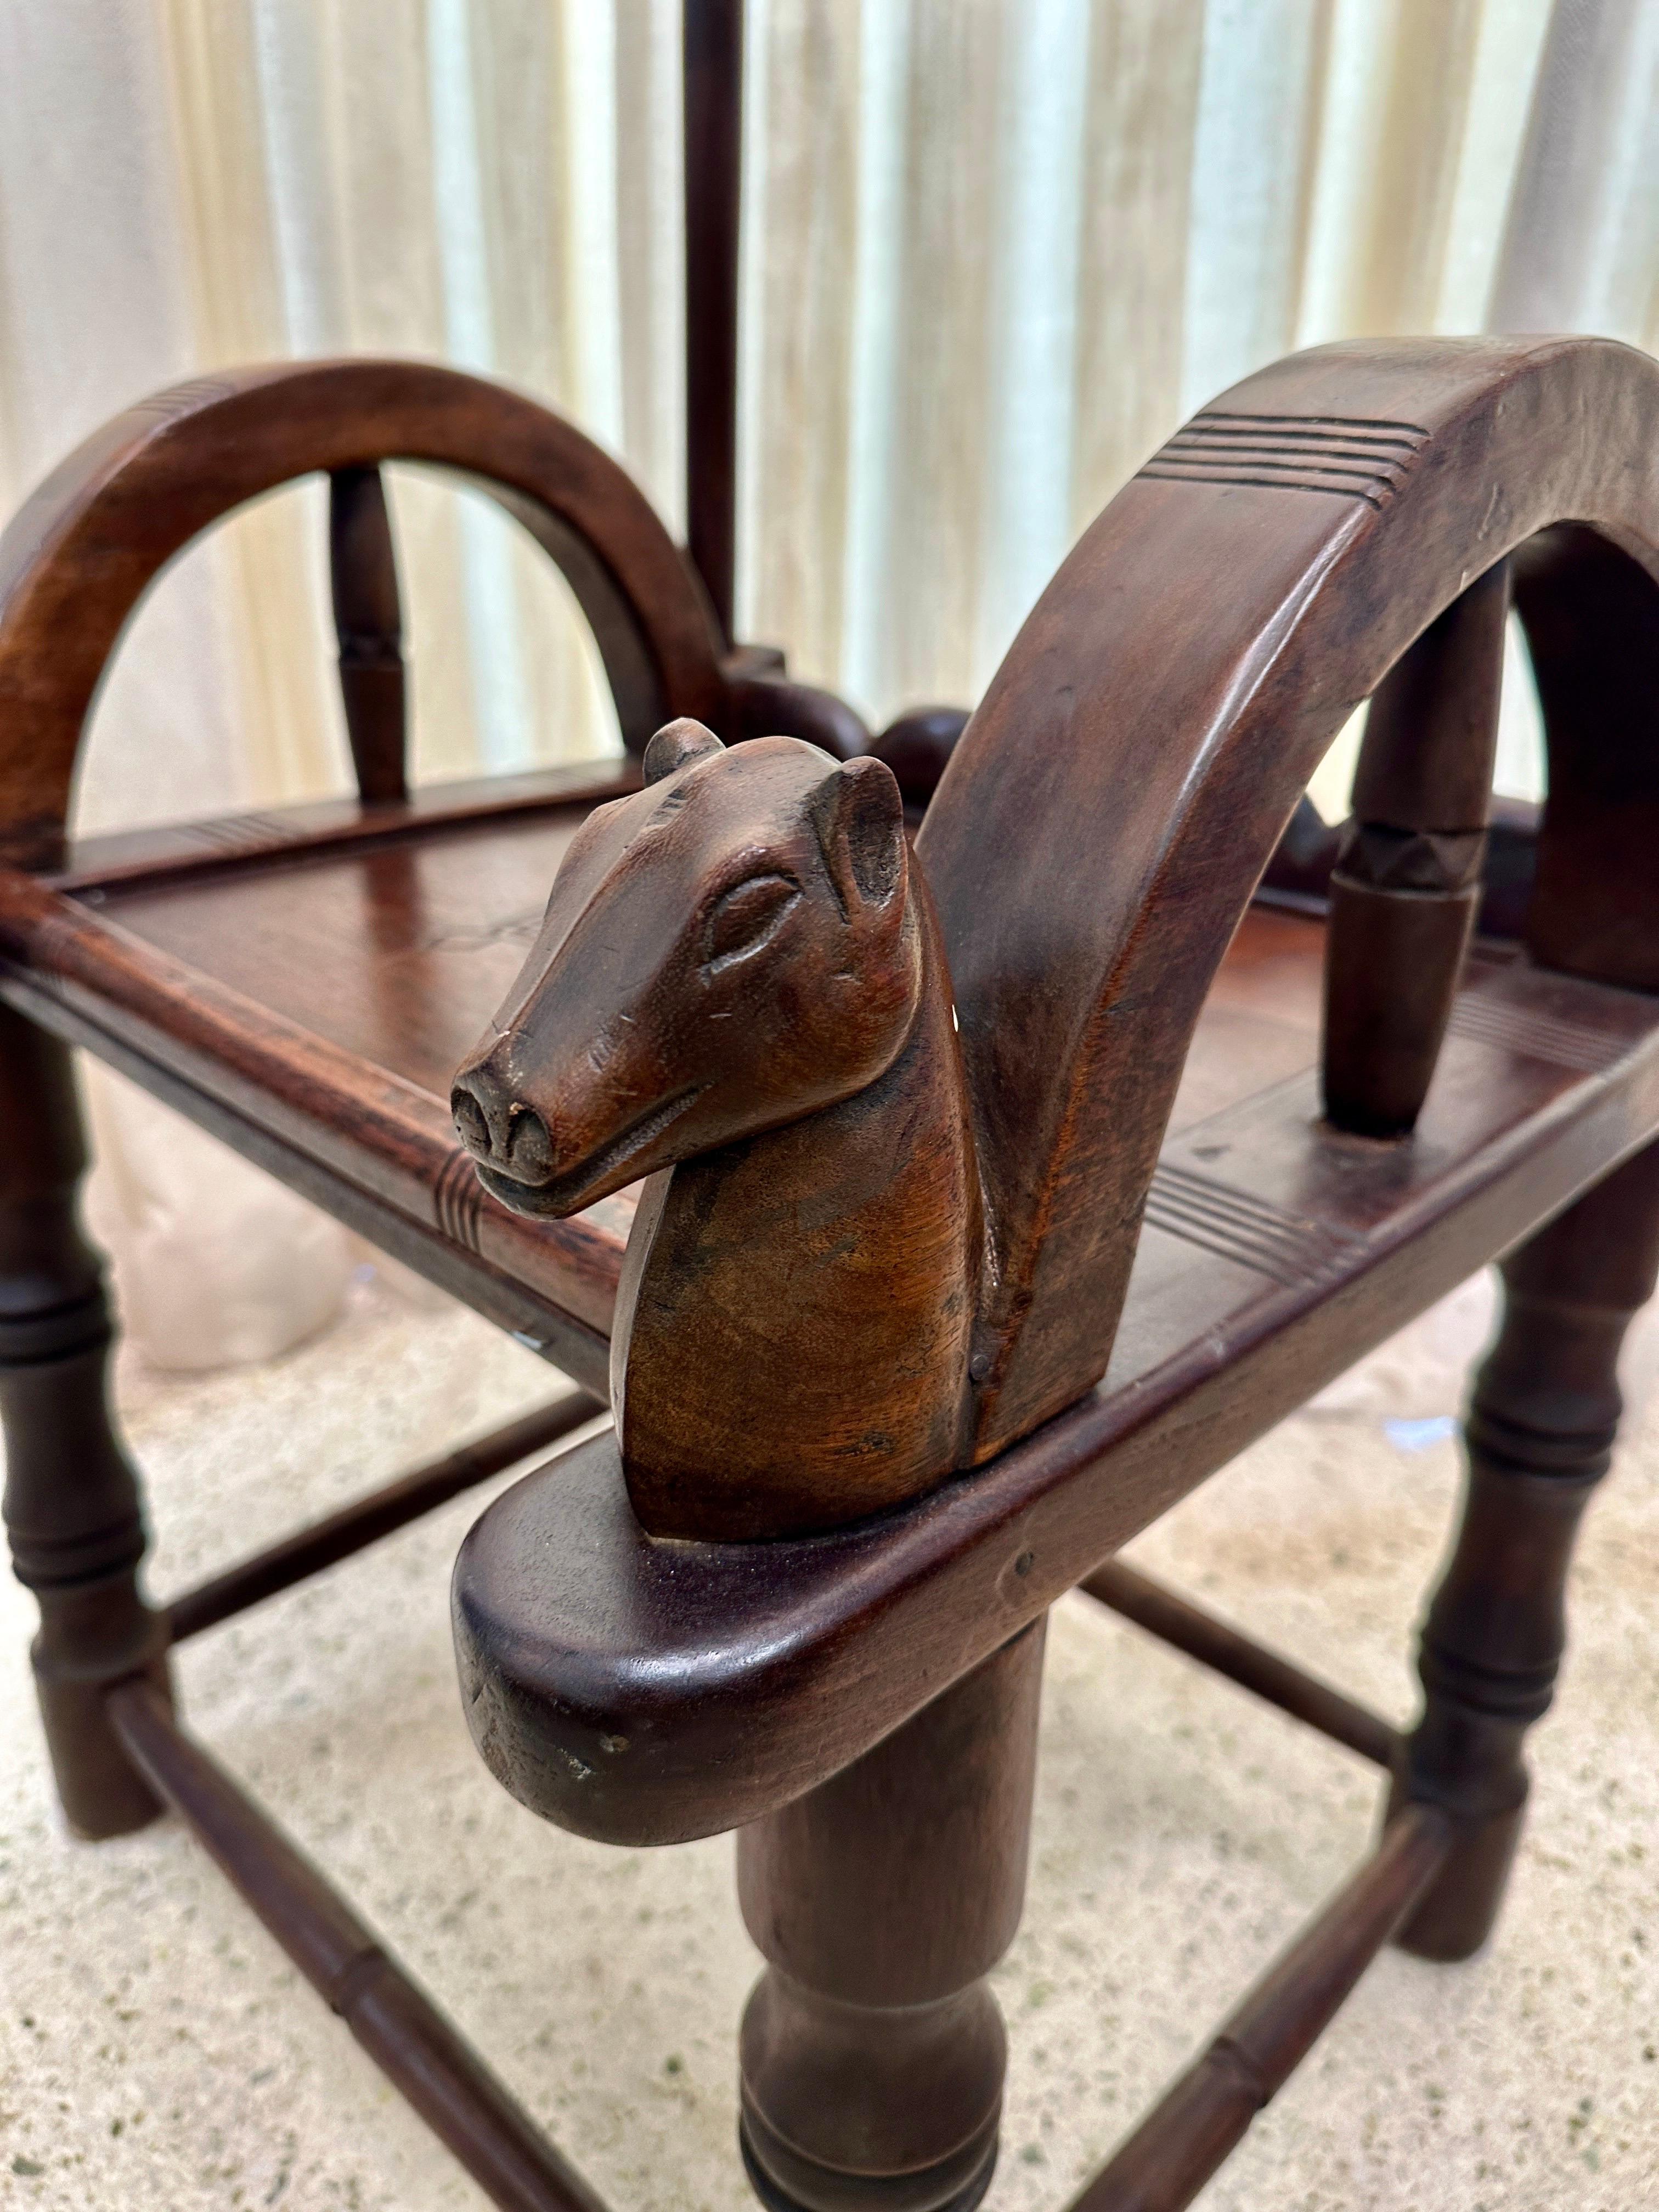 Chaise de chef ancienne et originale de la région de Baoulé, faite de sculptures traditionnelles et d'un dossier arqué.  La tribu des Baoulé de la Côte d'Ivoire, en Afrique de l'Ouest, est réputée pour son art tribal, ses sculptures et ses meubles.